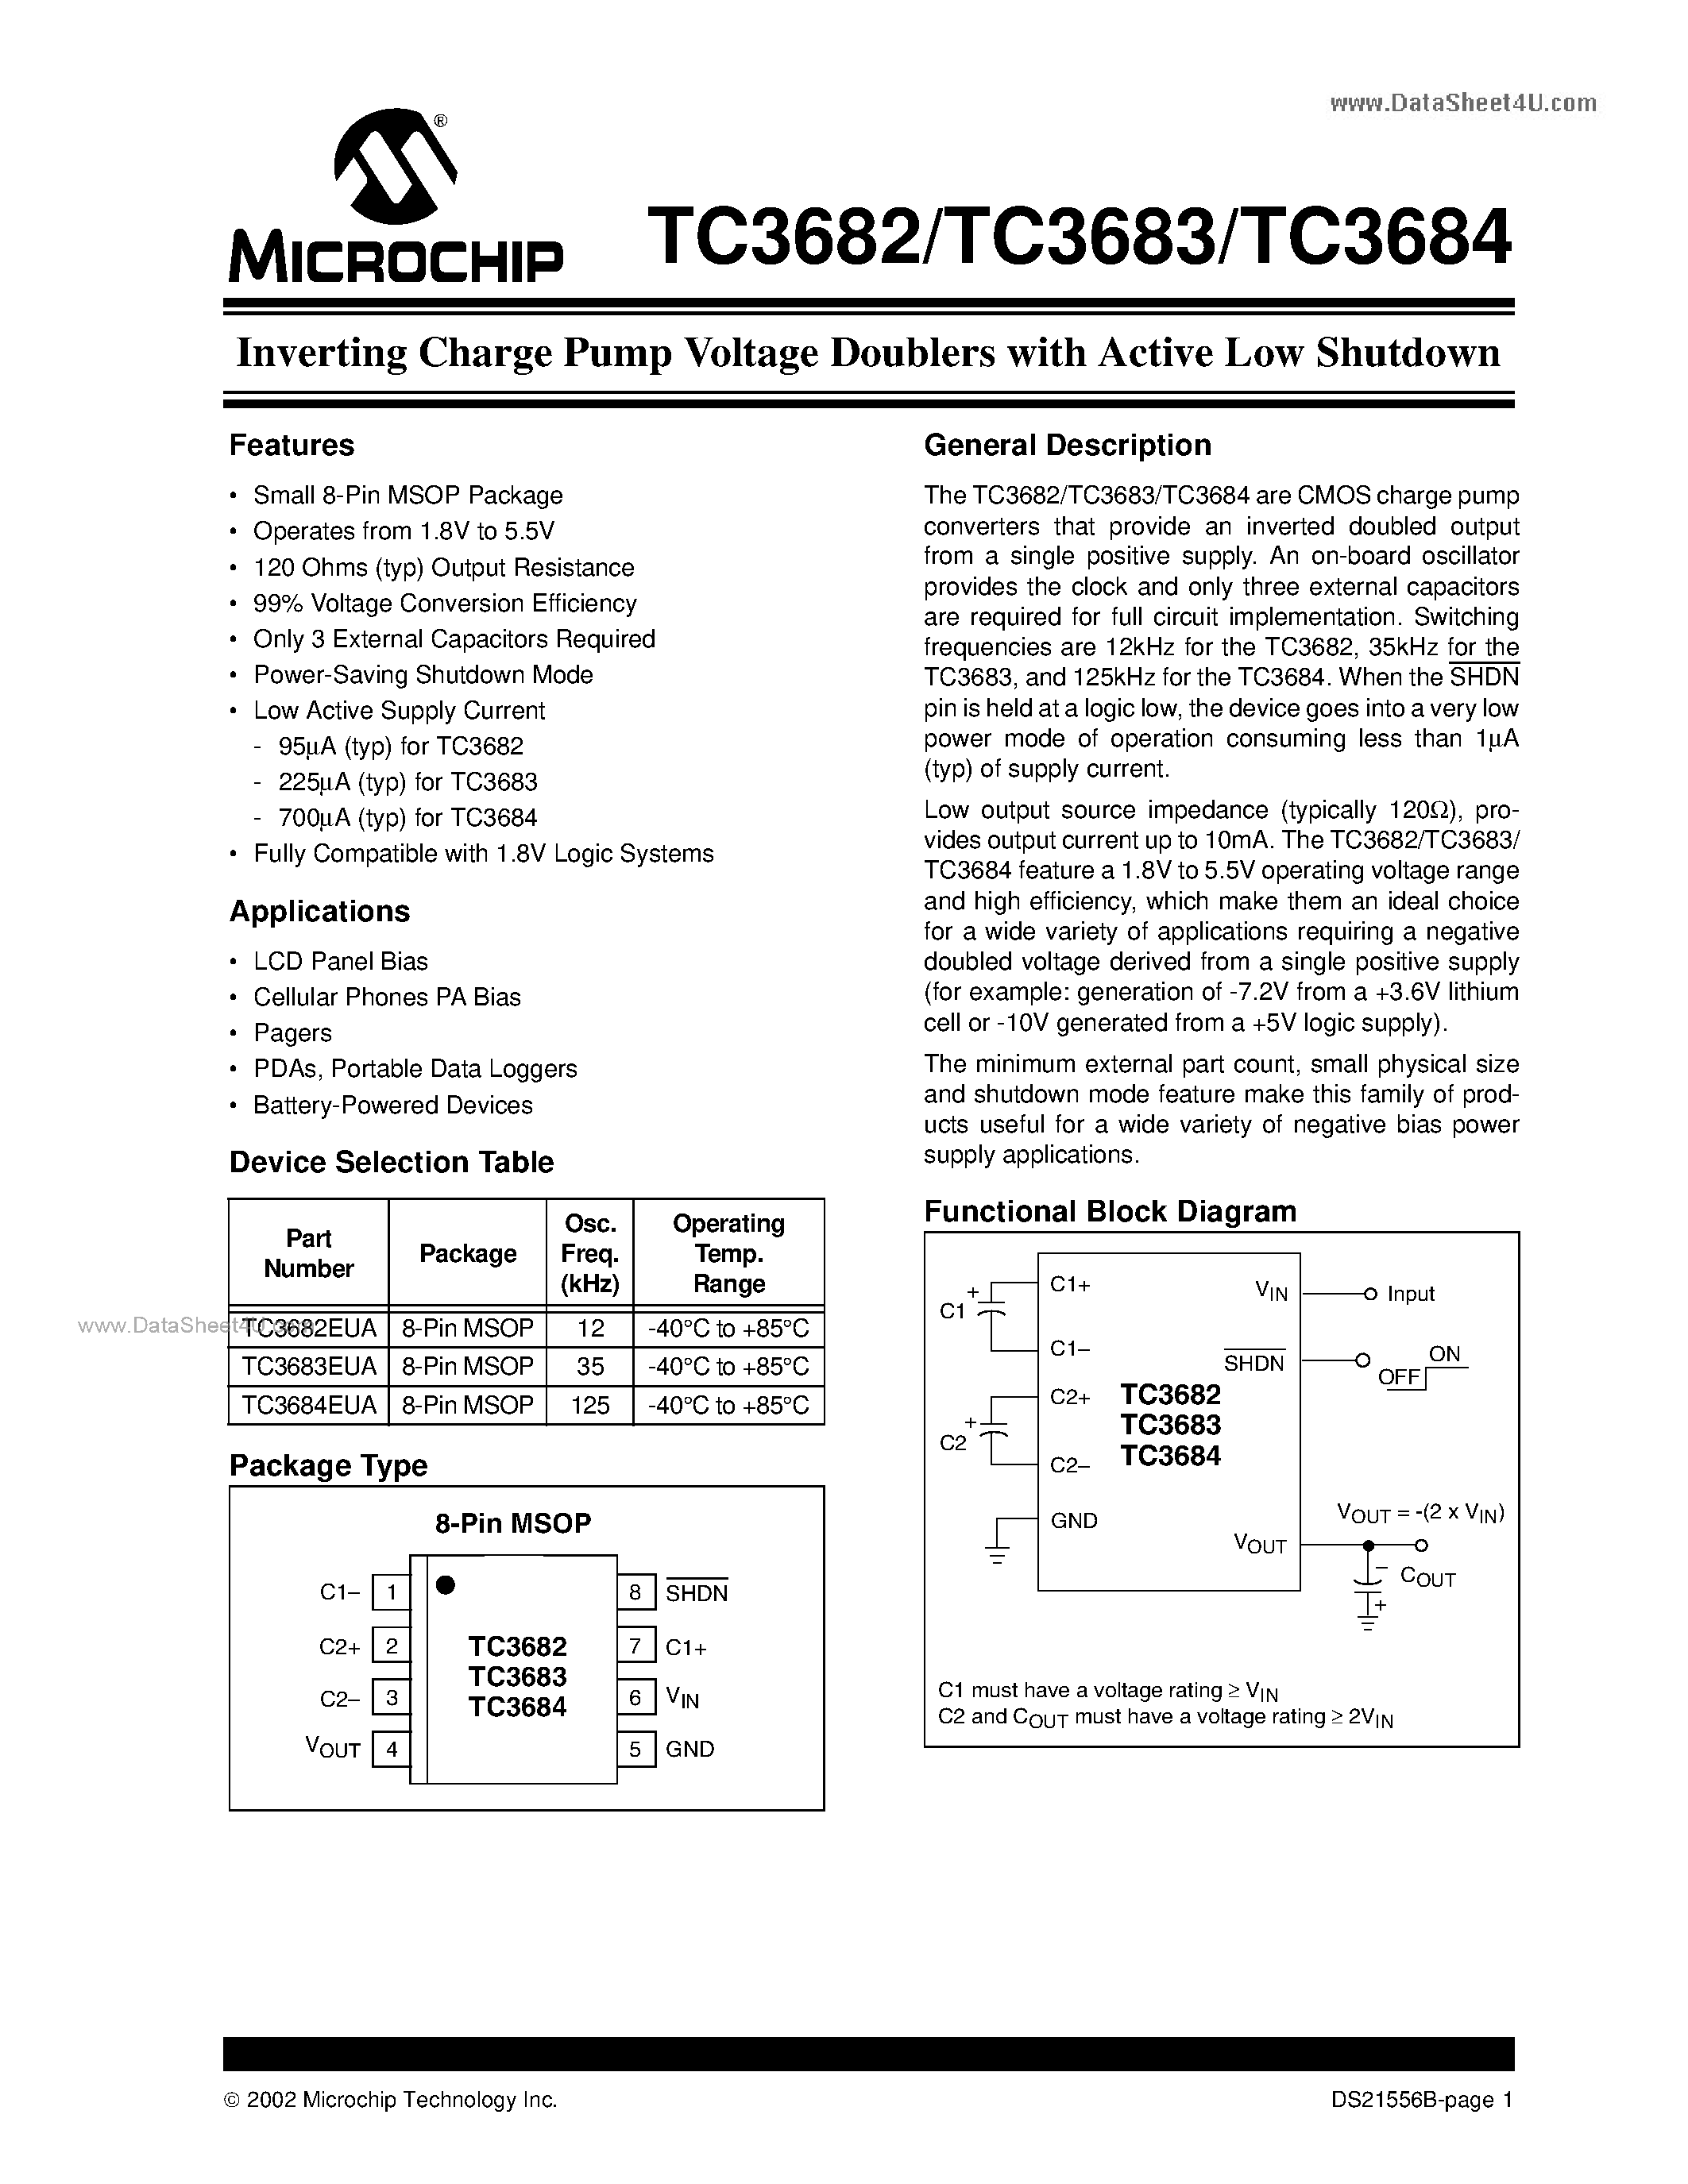 Даташит TC3682 - (TC3682 - TC3684) Inverting Charge Pump Voltage Doublers страница 1